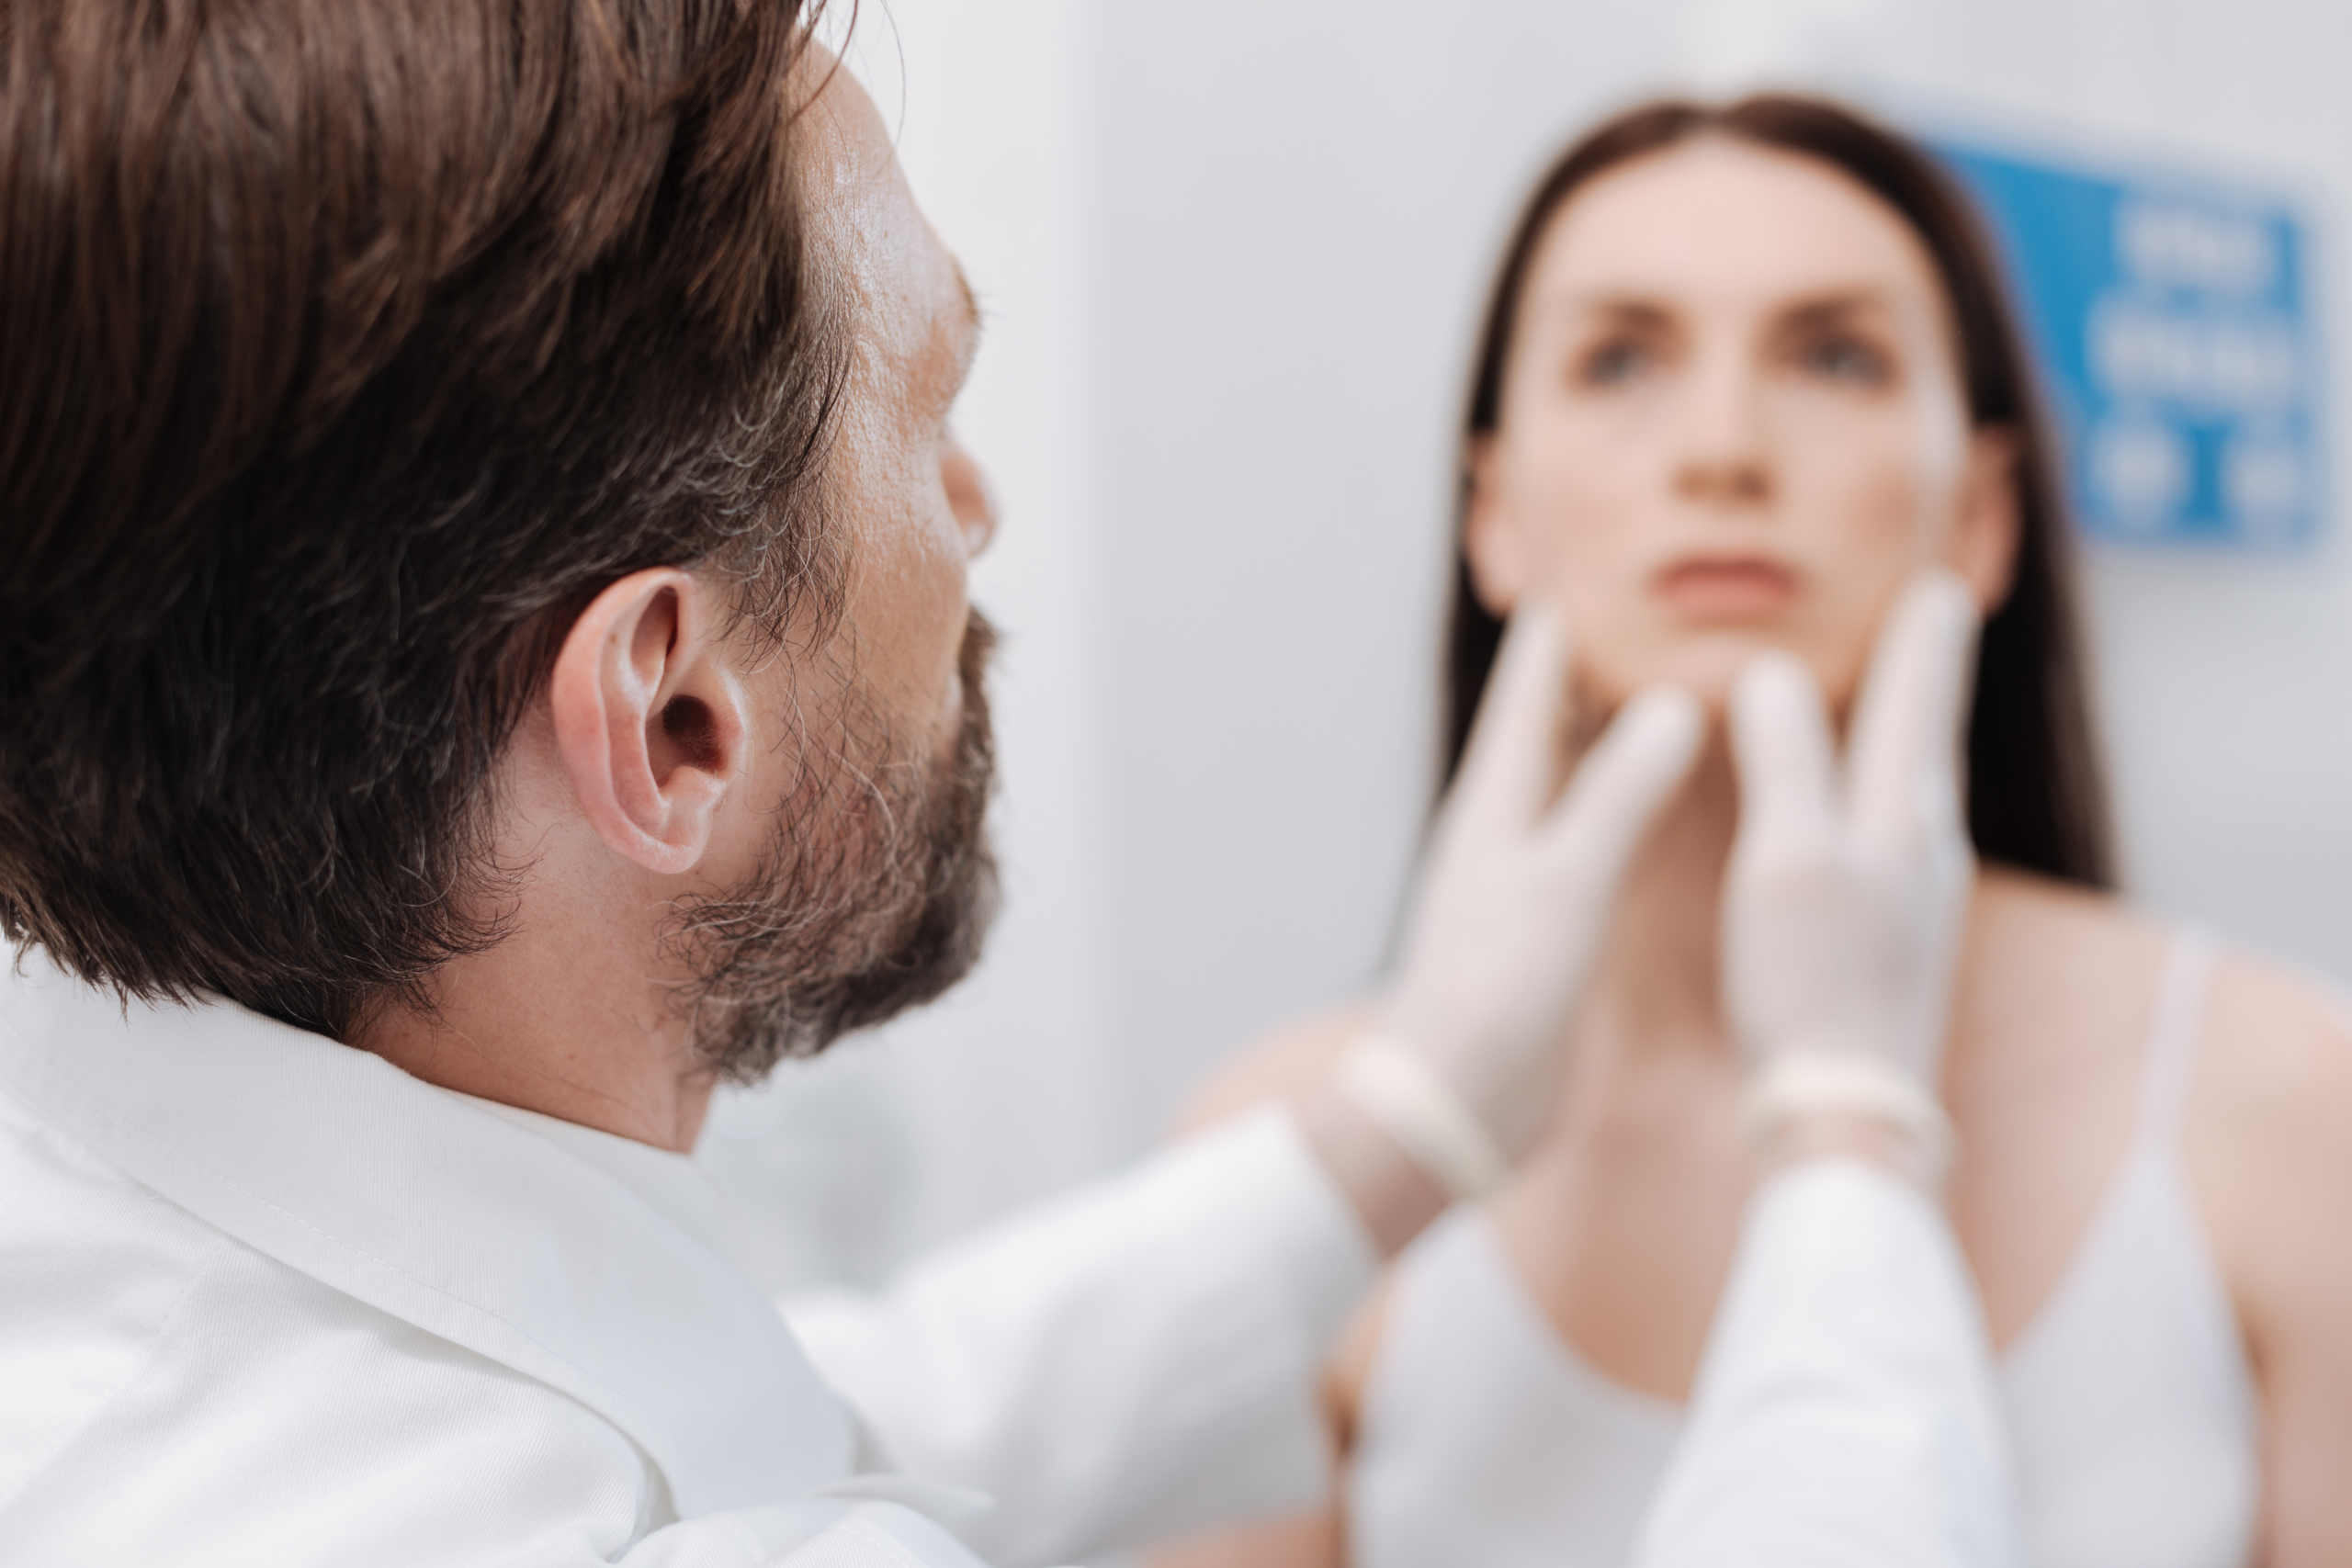 plastic surgeon examining patients face